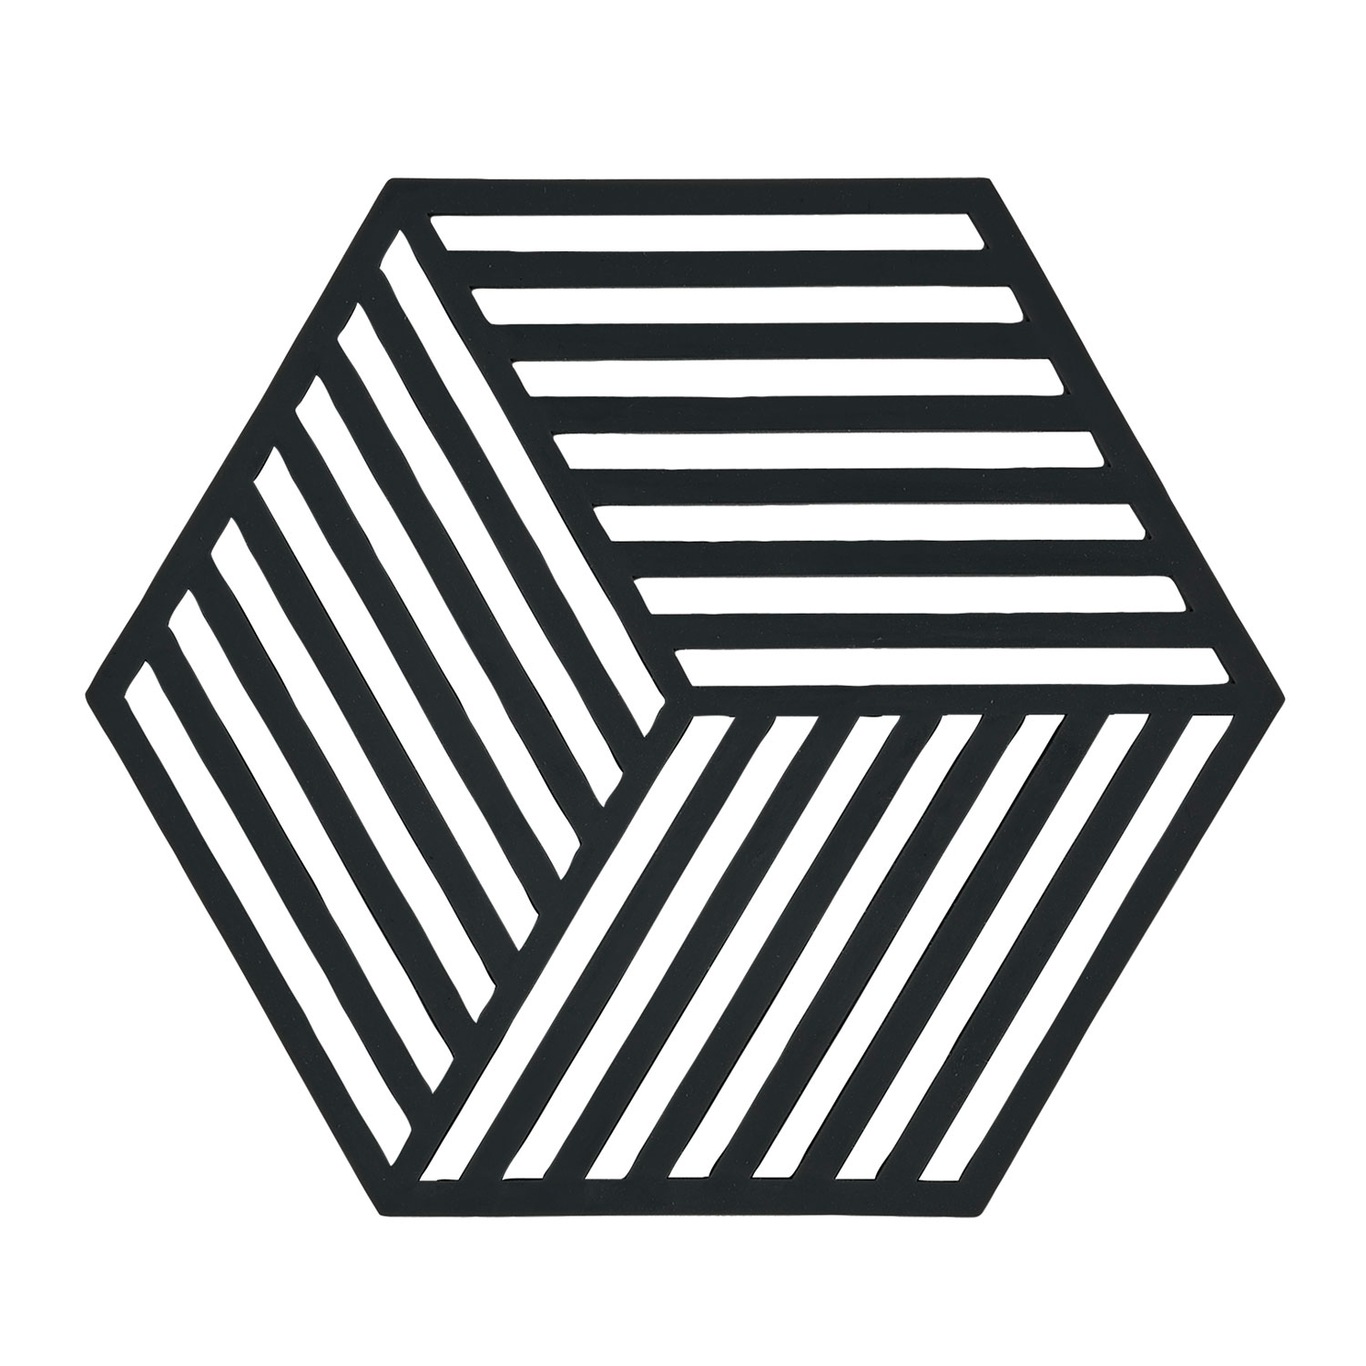 Hexagon Trivet Pannenonderzetter Zwart